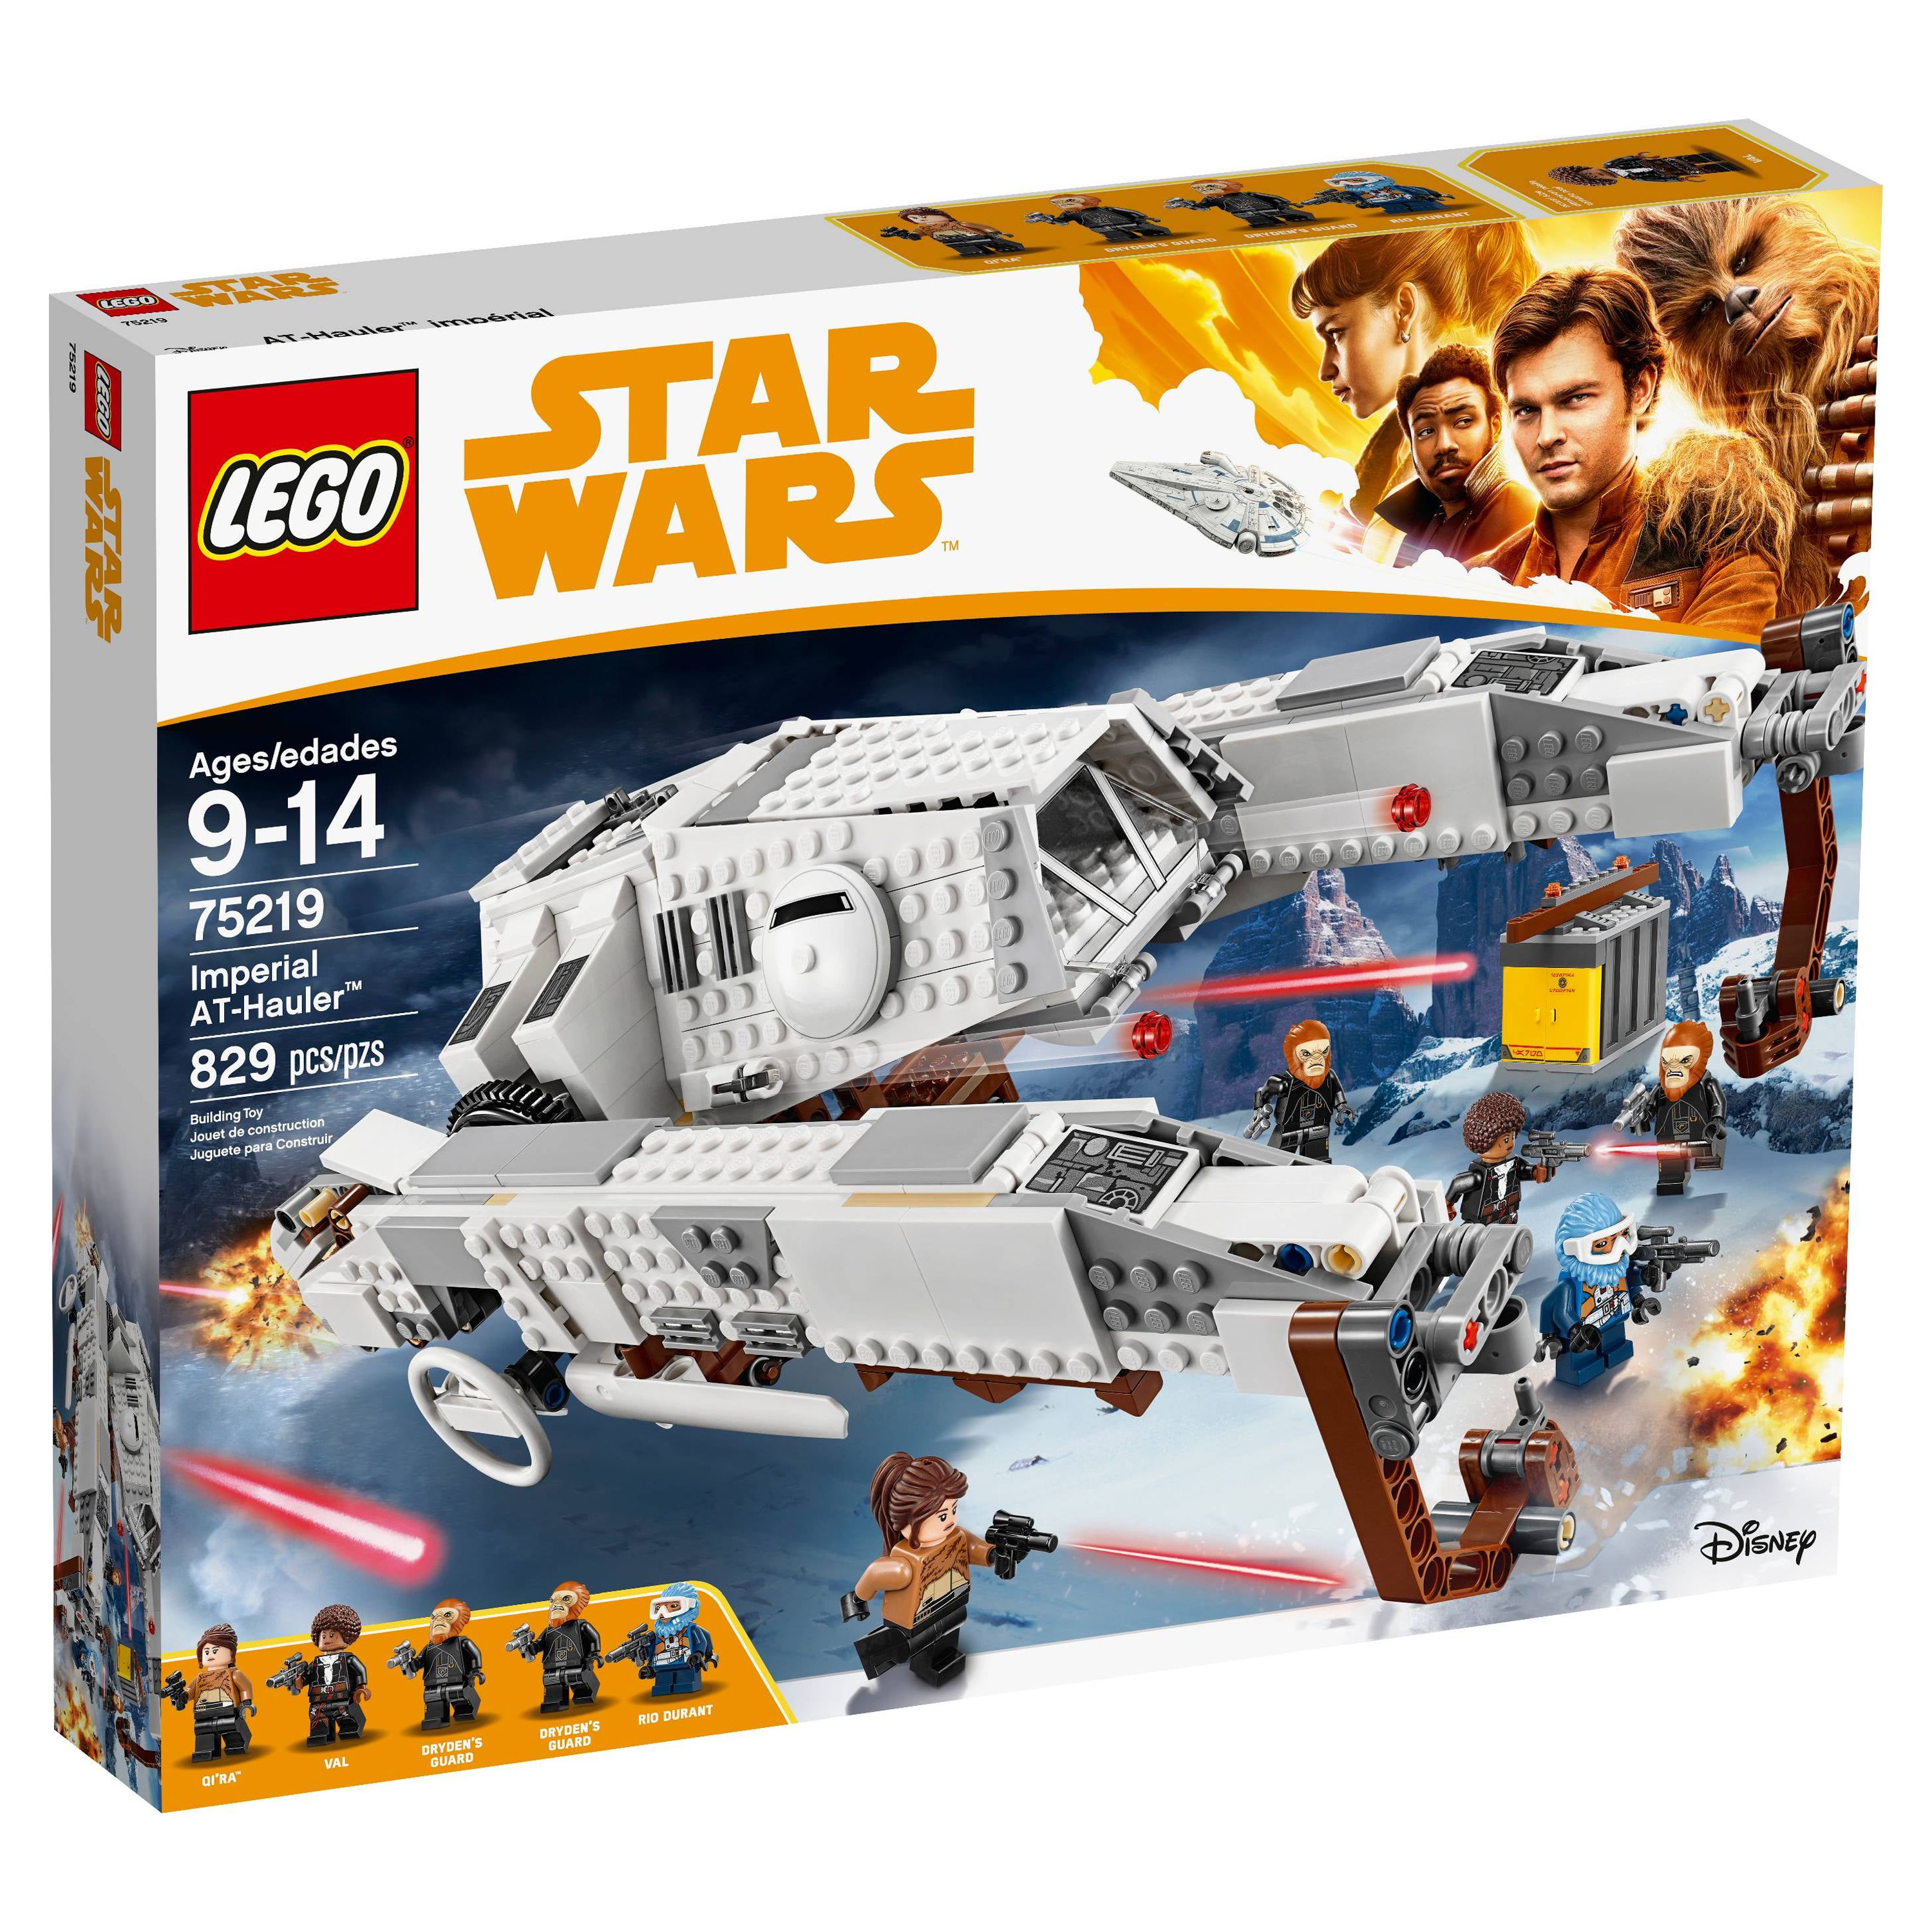 LEGO Star Wars TM Imperial AT-Hauler 75219 Building Set - image 4 of 7